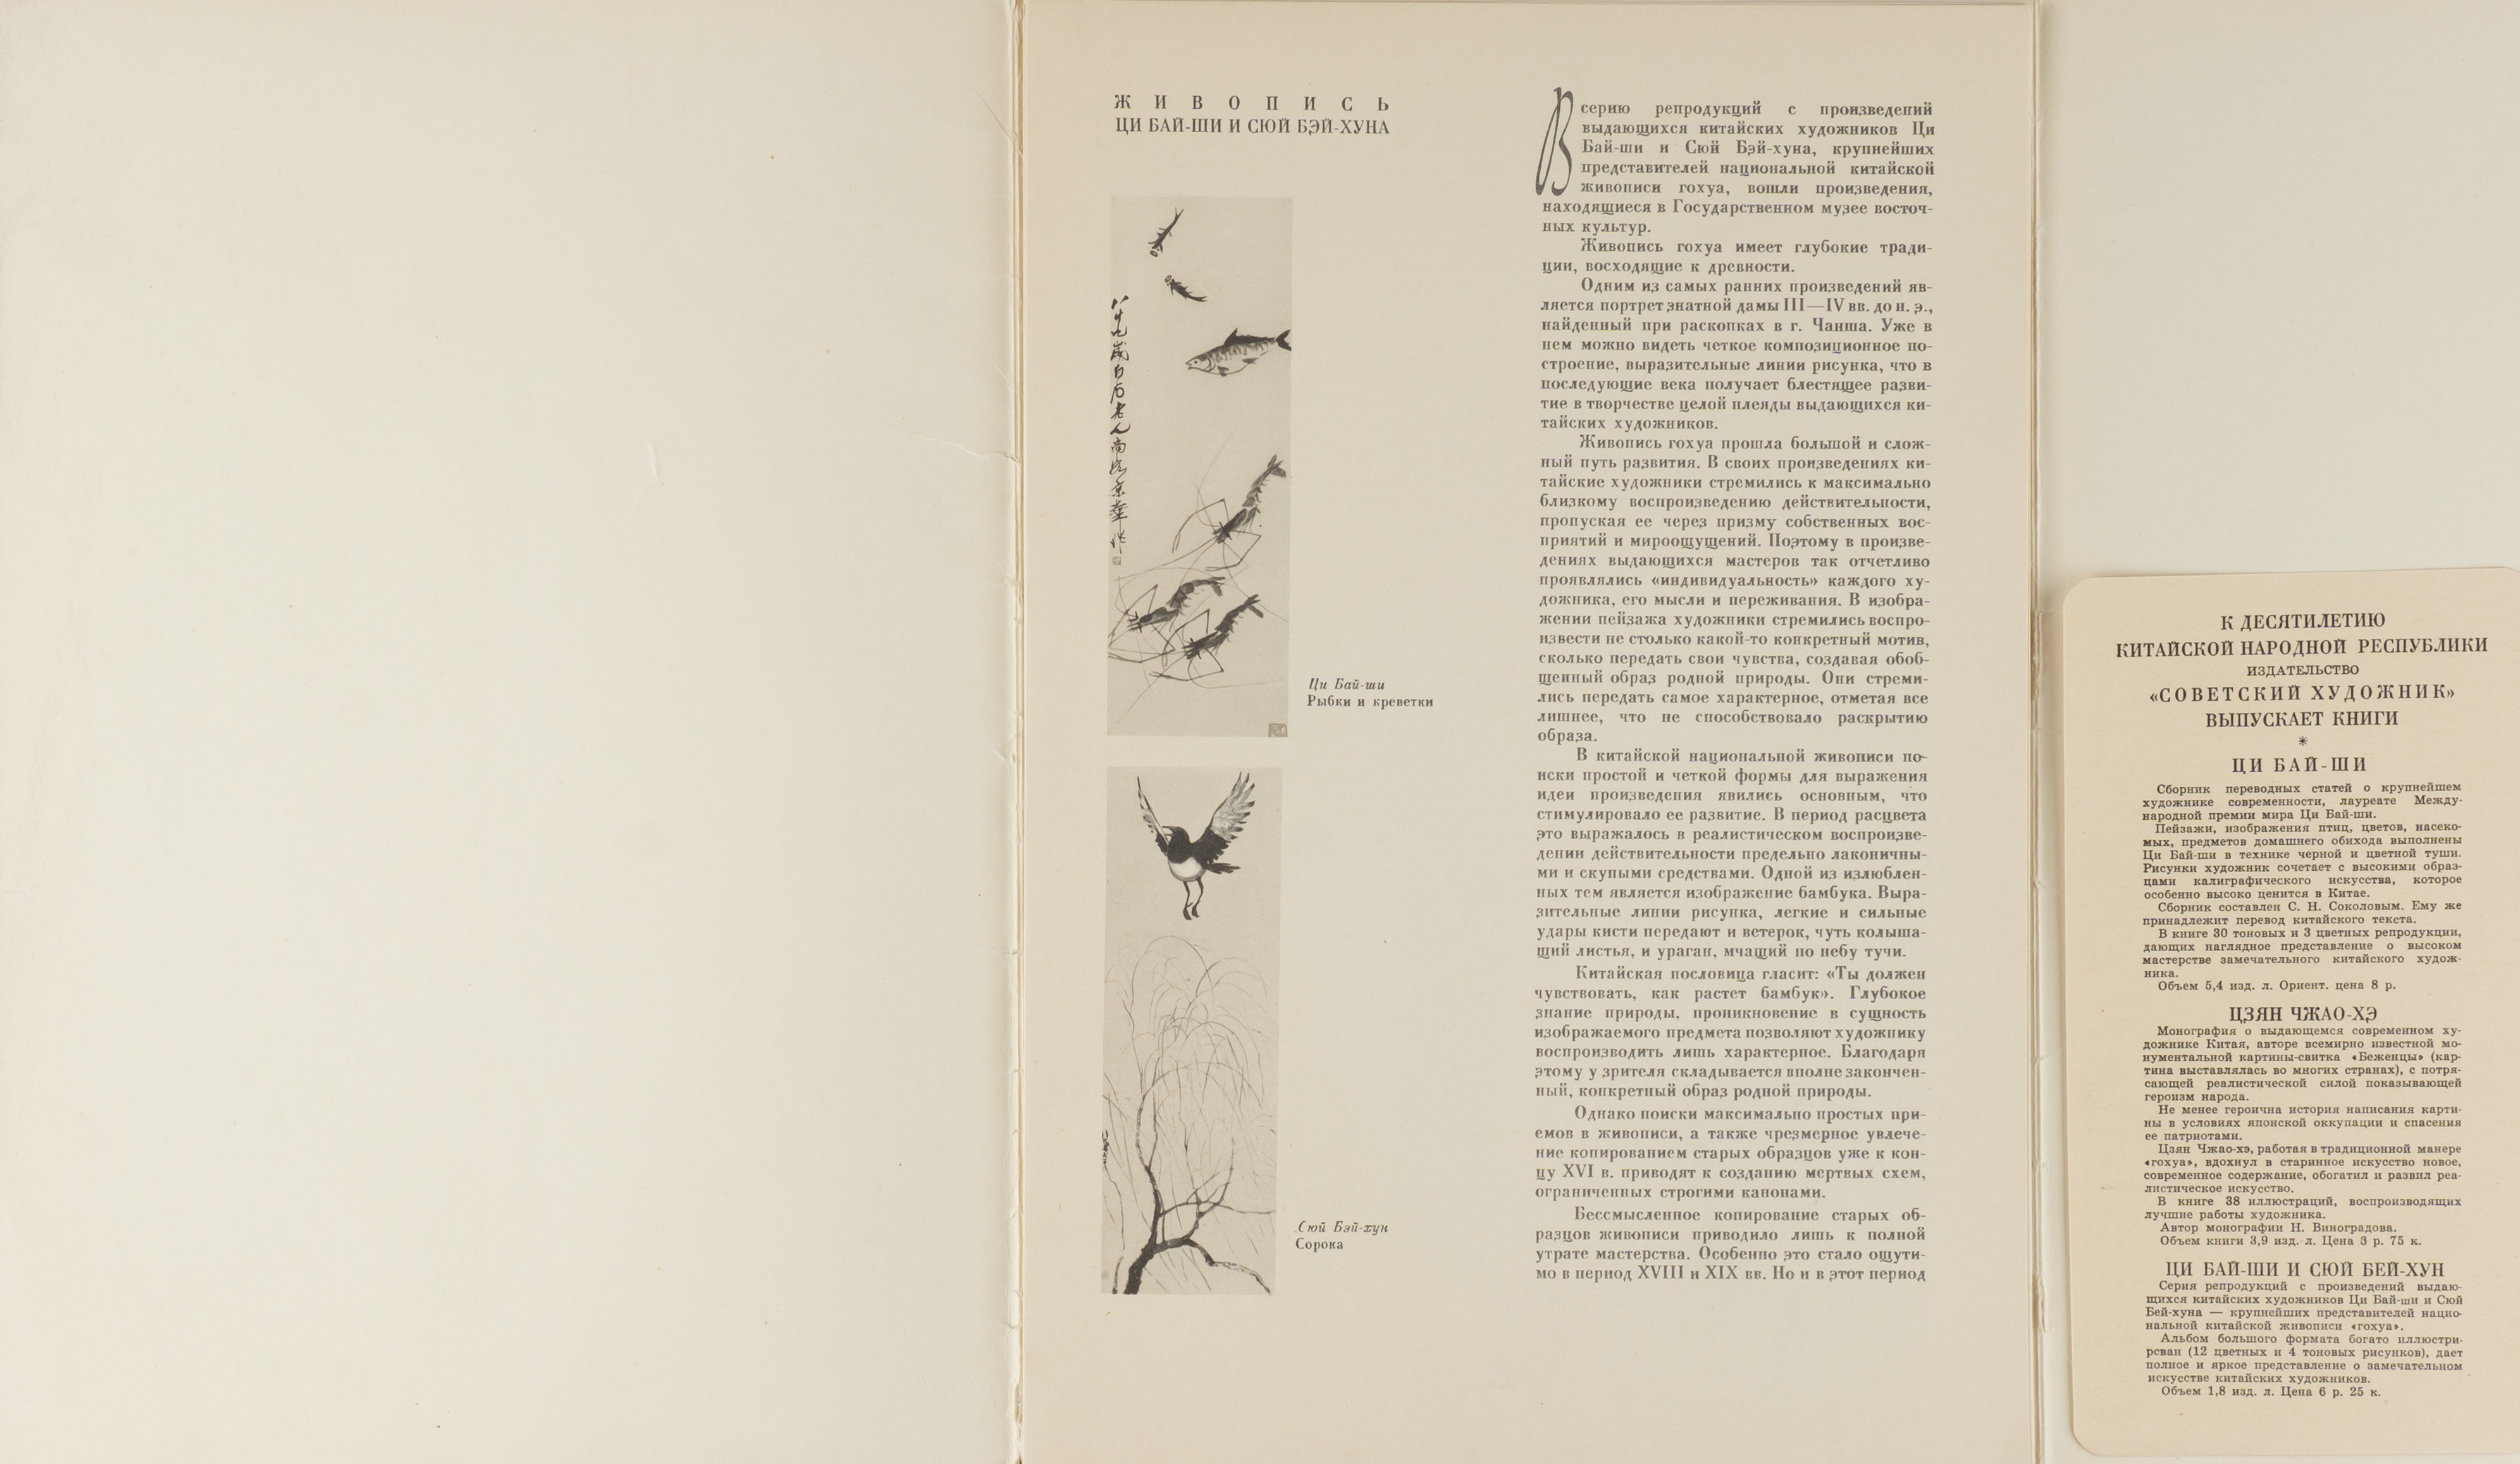 Живопись Ци Бай-Ши и Сюй Бэй-Хуна. 12 литографий (М., 1959).